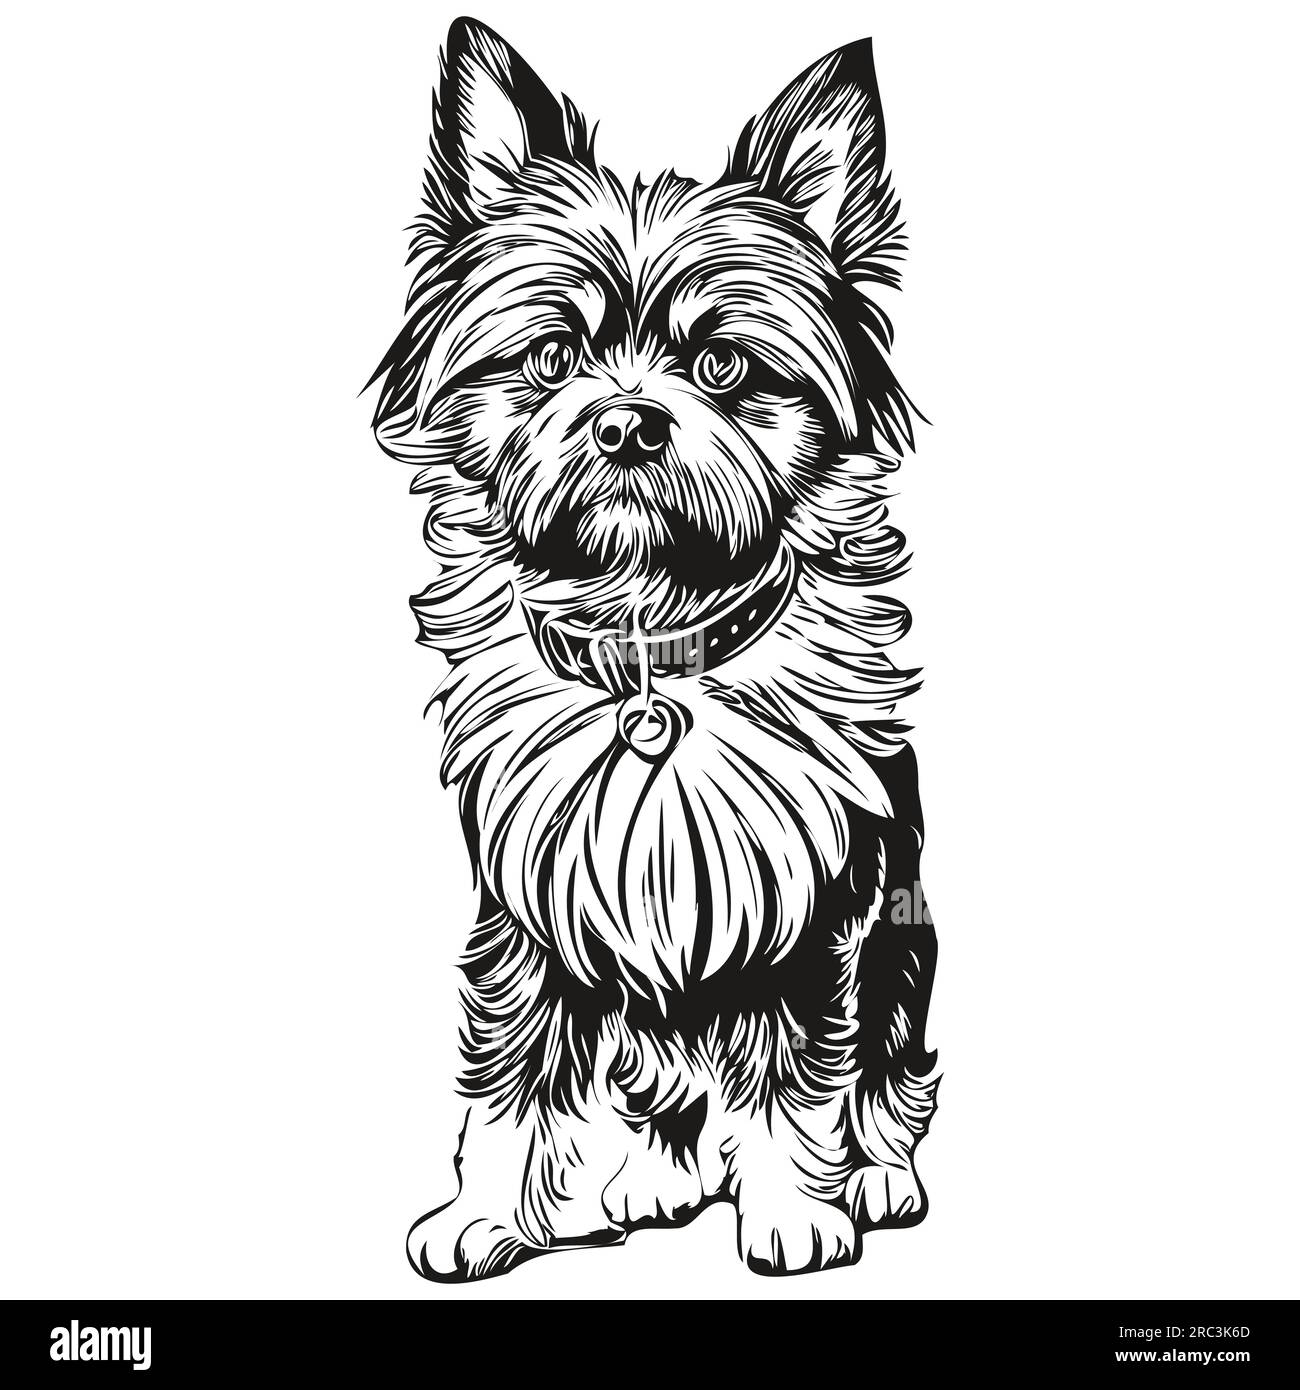 Vecteur de dessin noir de chien Affenpinscher, illustration de ligne d'esquisse de peinture de visage isolé Illustration de Vecteur